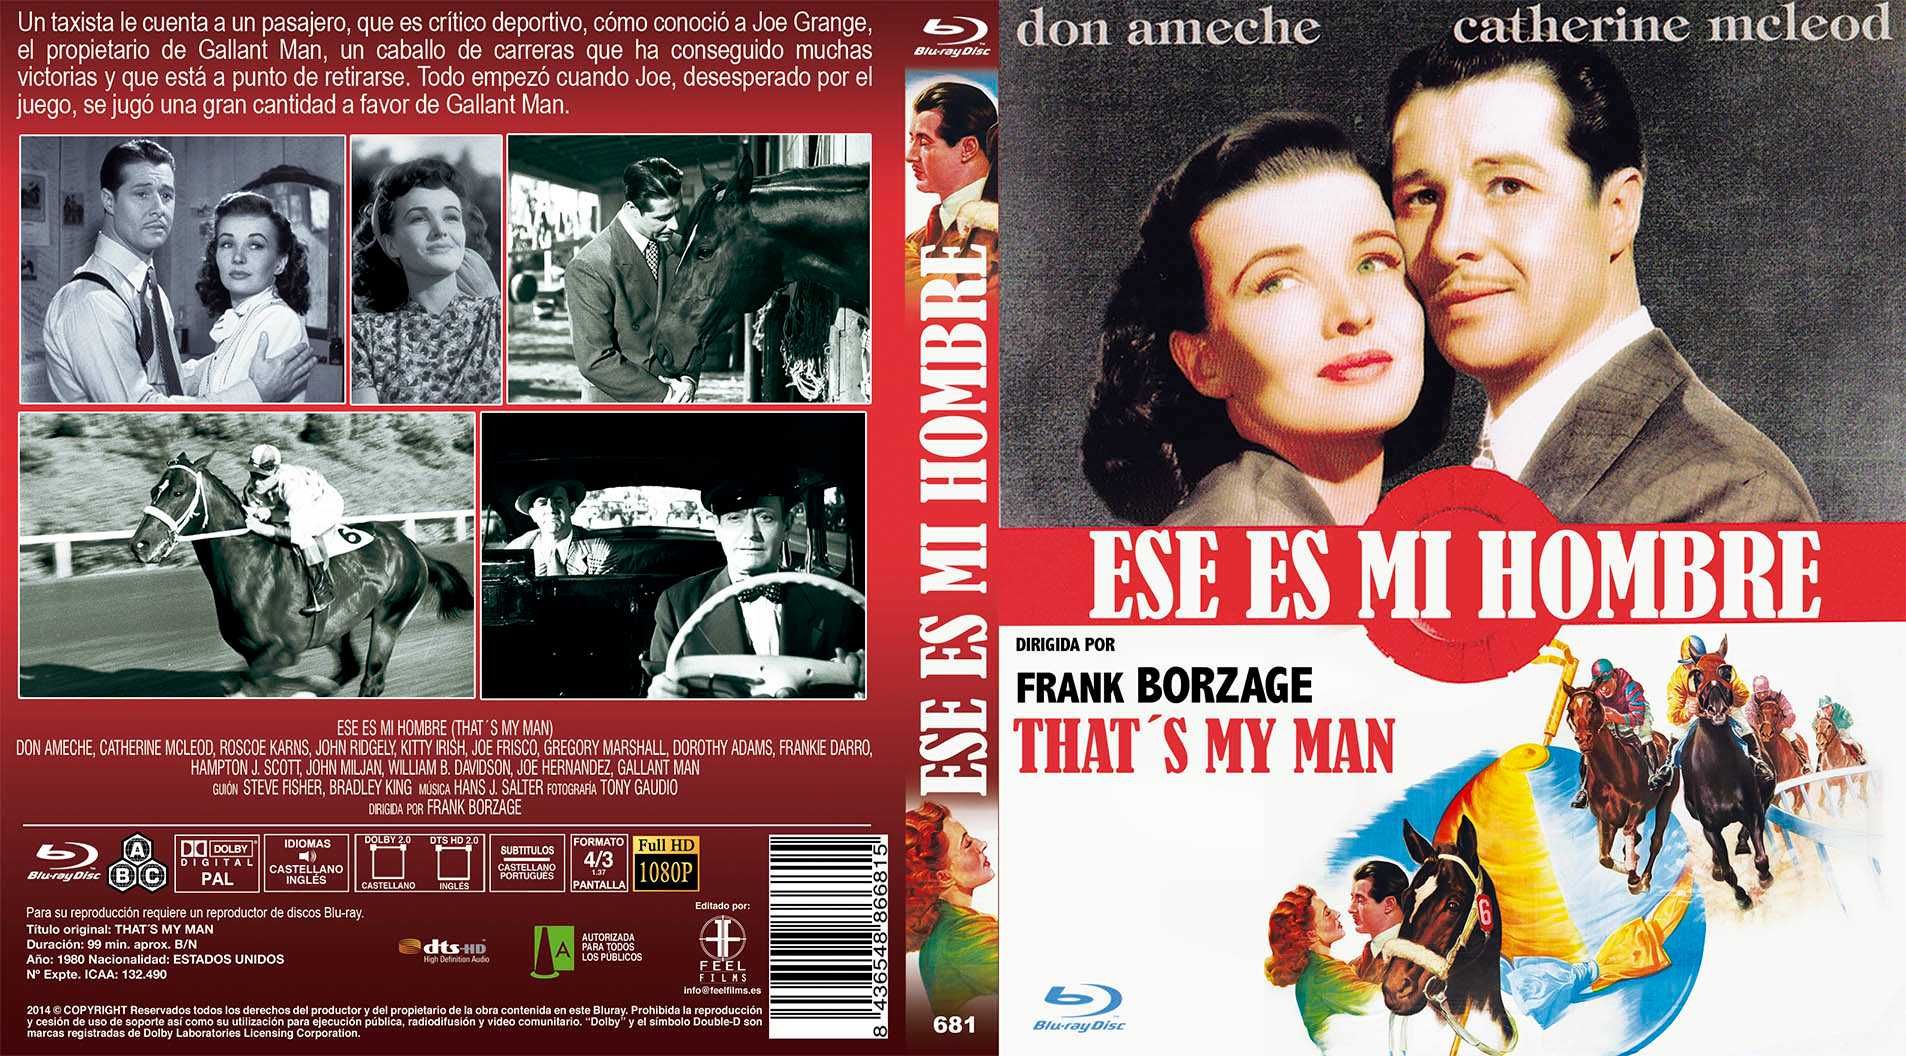 Ese Es Mi Hombre/That's My Man(Blu-Ray)-Importado